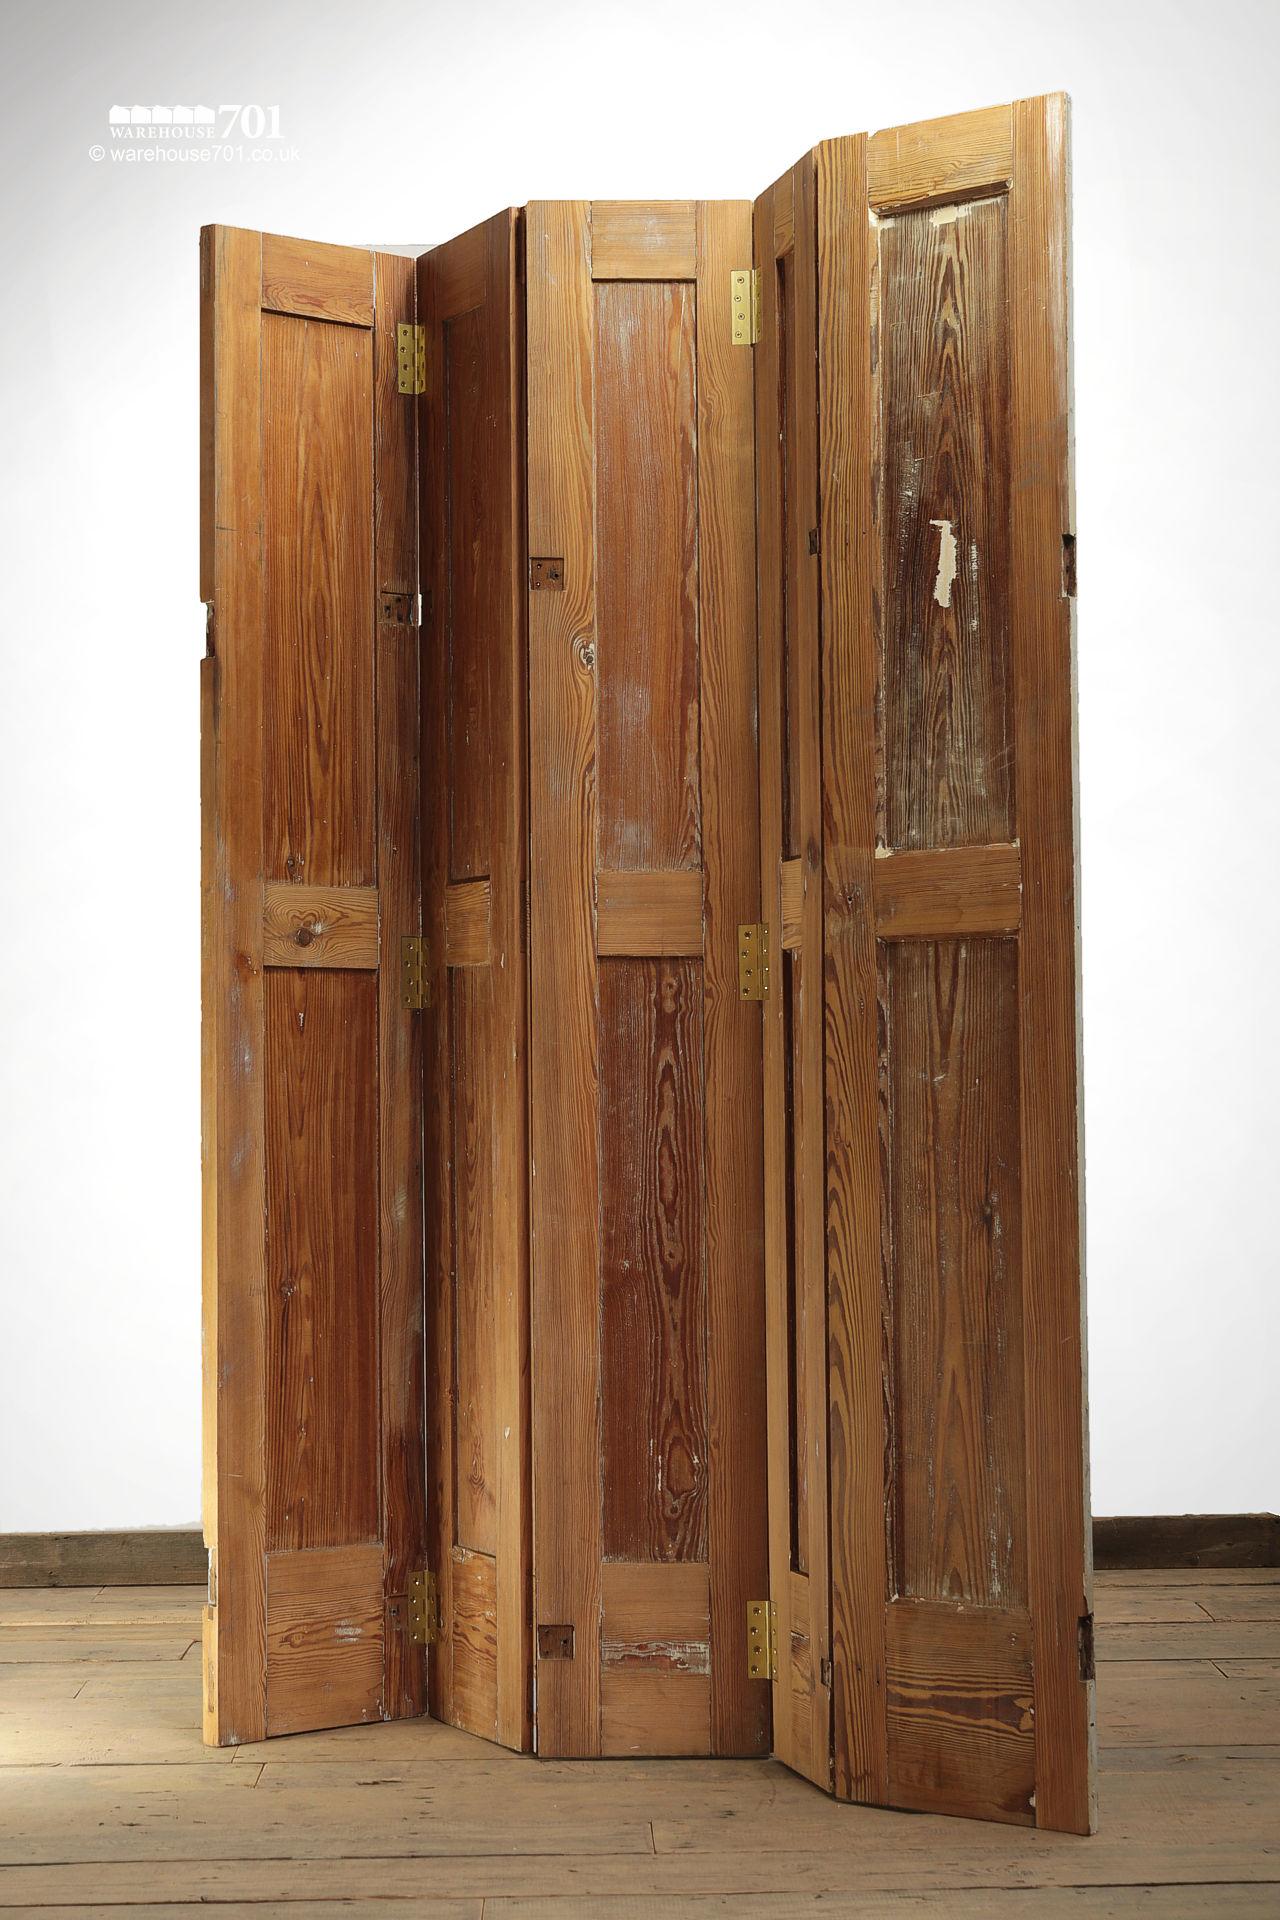 Vintage Style Five-Leaf Wood Shutter Room Divider #3